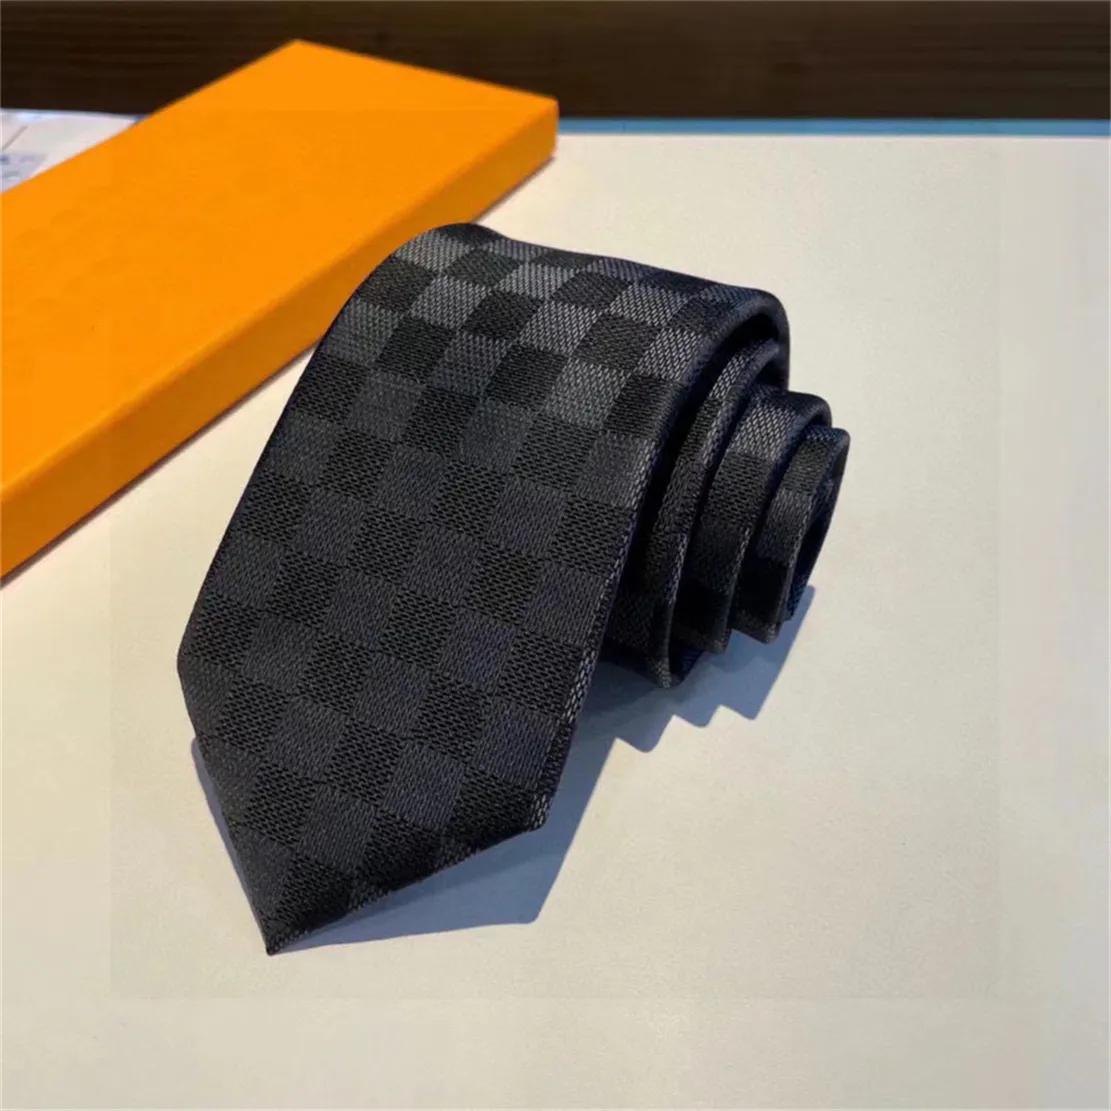 Luksusowy nowy projektant 100% krawat jedwabny krawat czarny niebieski żakard ręczny tkany dla mężczyzn ślubny i biznesowy krawat moda hawaje szyi krawaty z pudełkiem 128